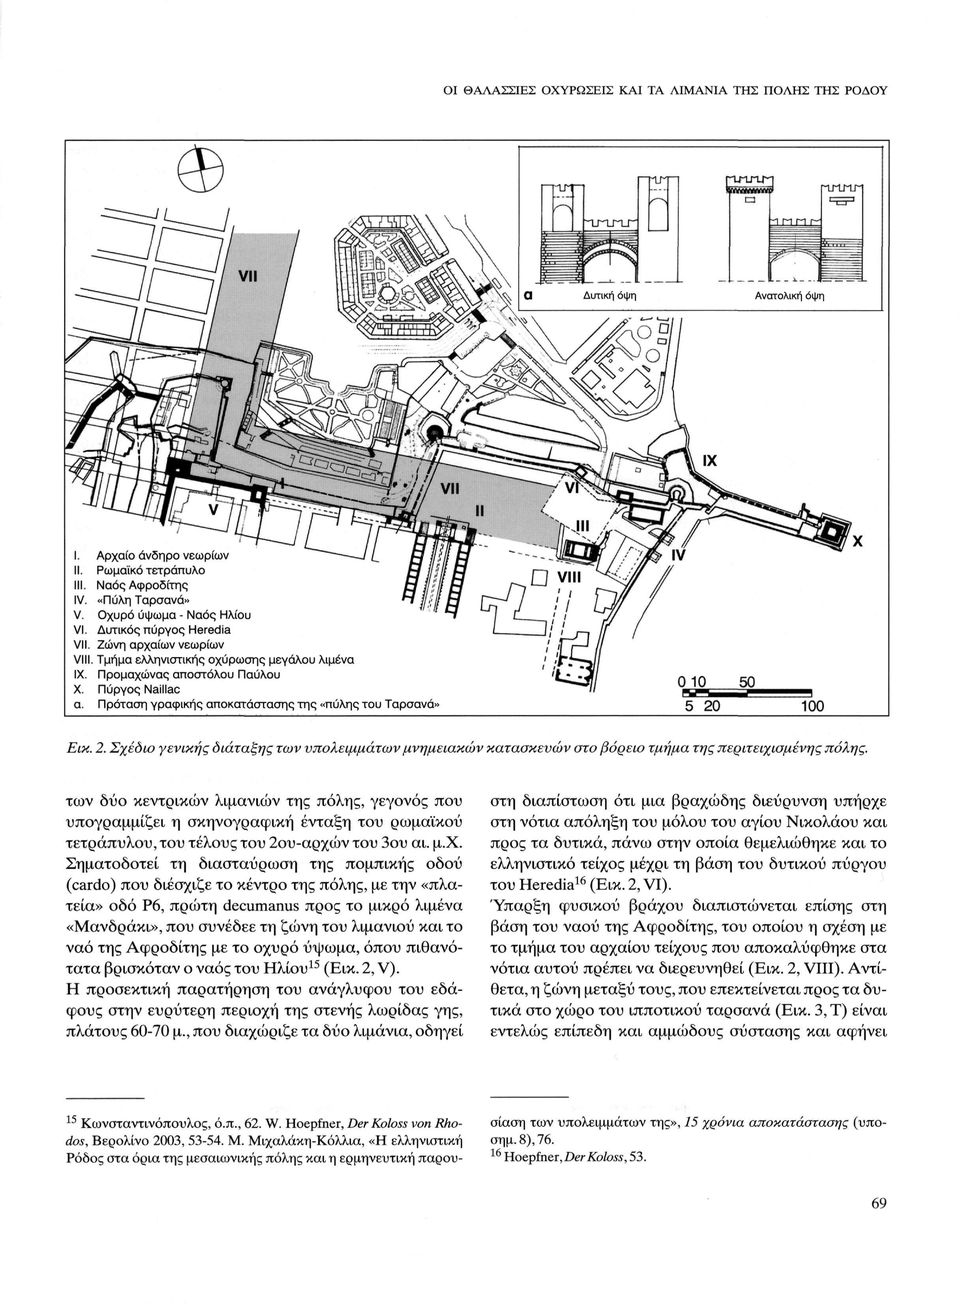 Σχέδιο γενικής διάταξης των υπολειμμάτων μνημειακών κατασκευών στο βόρειο τμήμα της περιτειχισμένης πόλης.